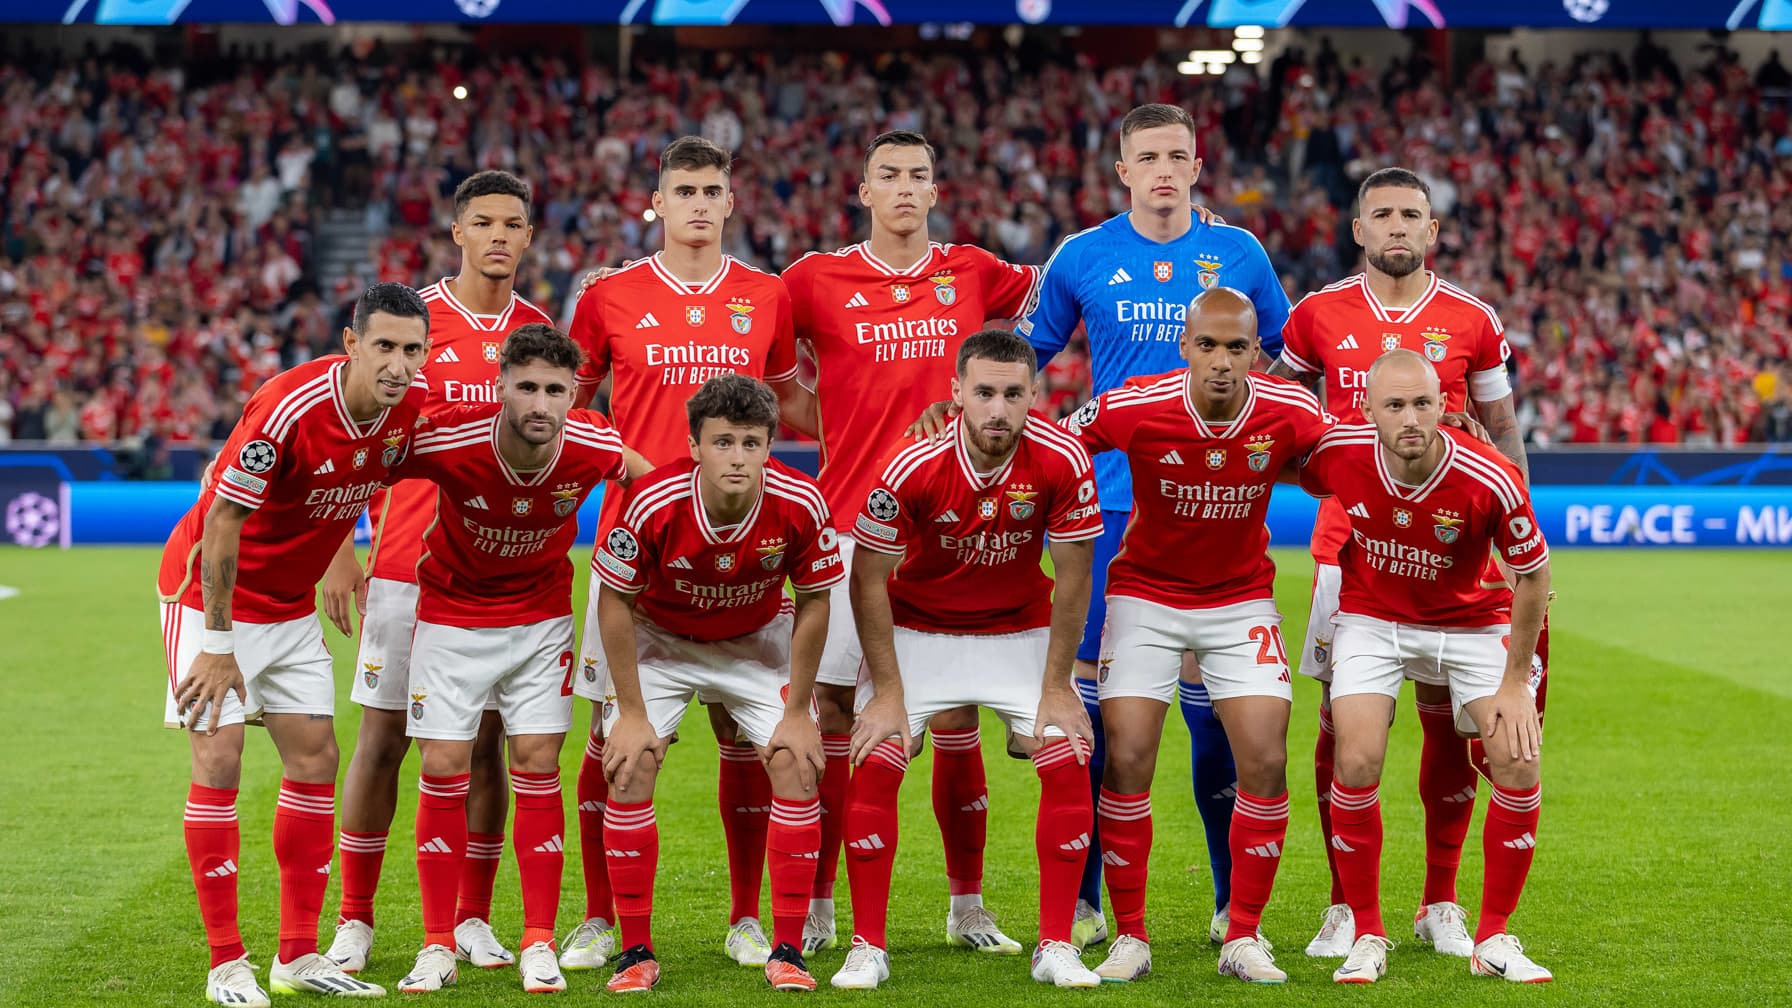 classement, état de forme, joueurs en vue... où en est Benfica avant d'affronter l'OM? thumbnail